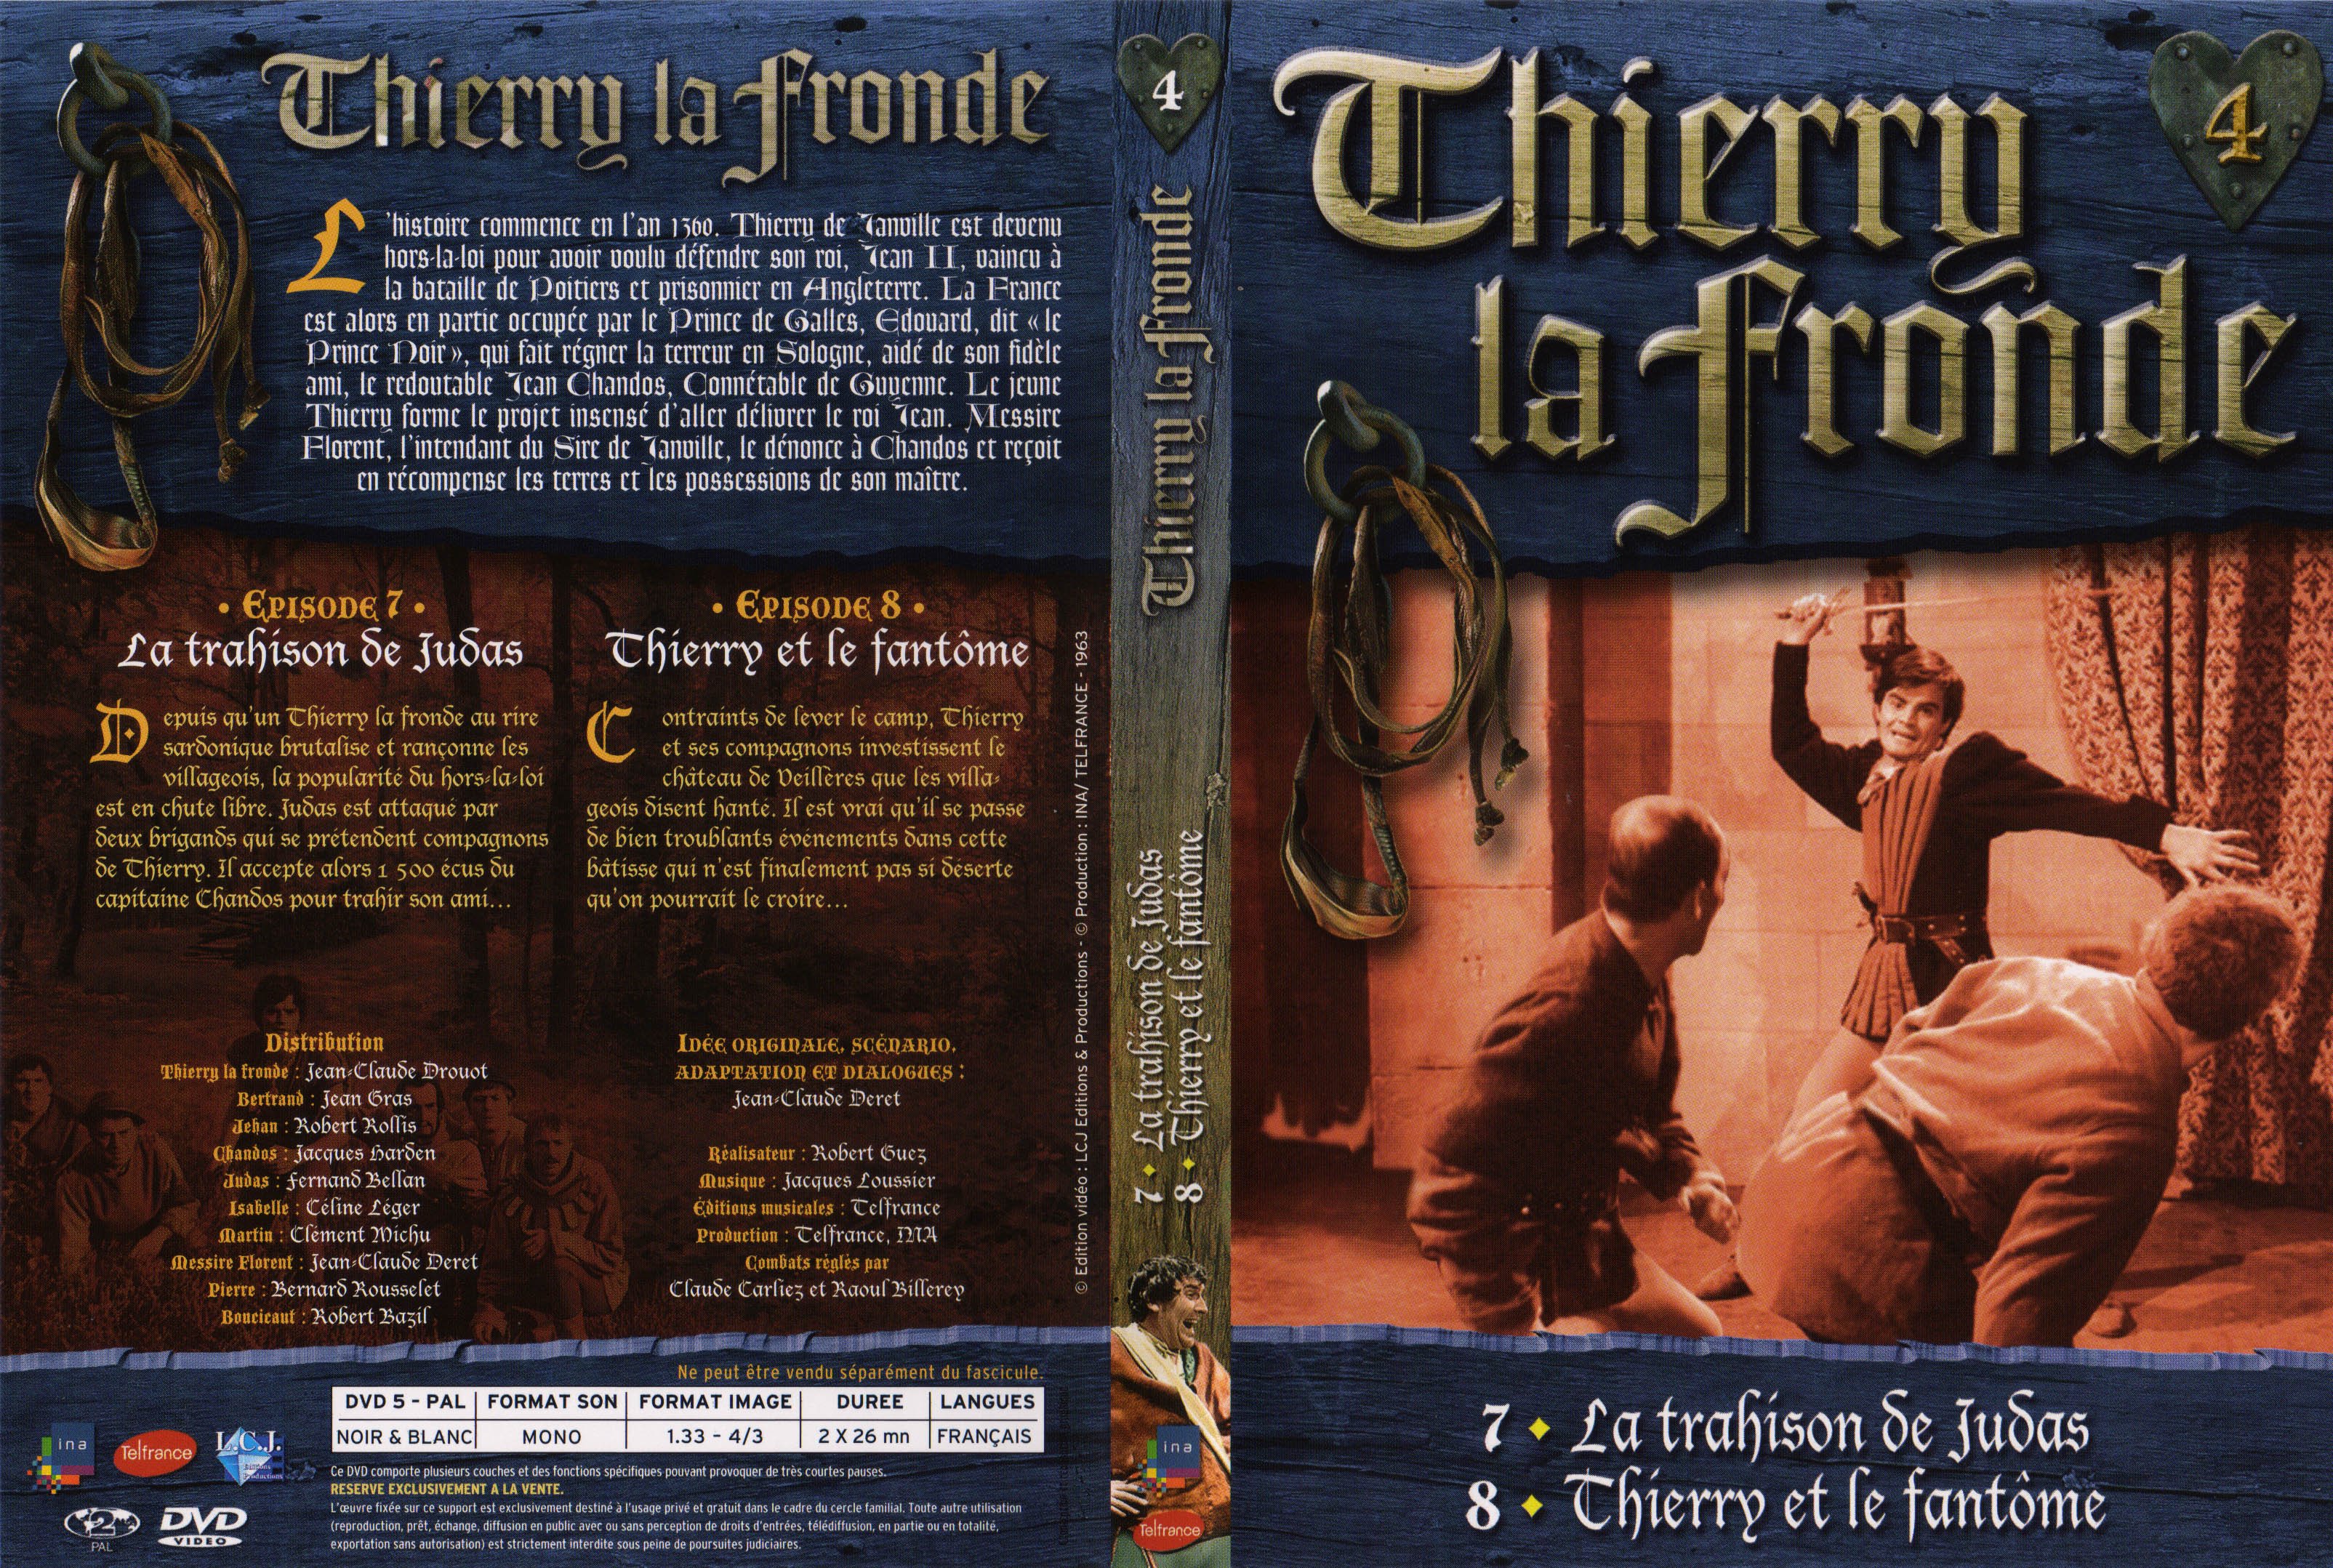 Jaquette DVD Thierry la Fronde vol 04